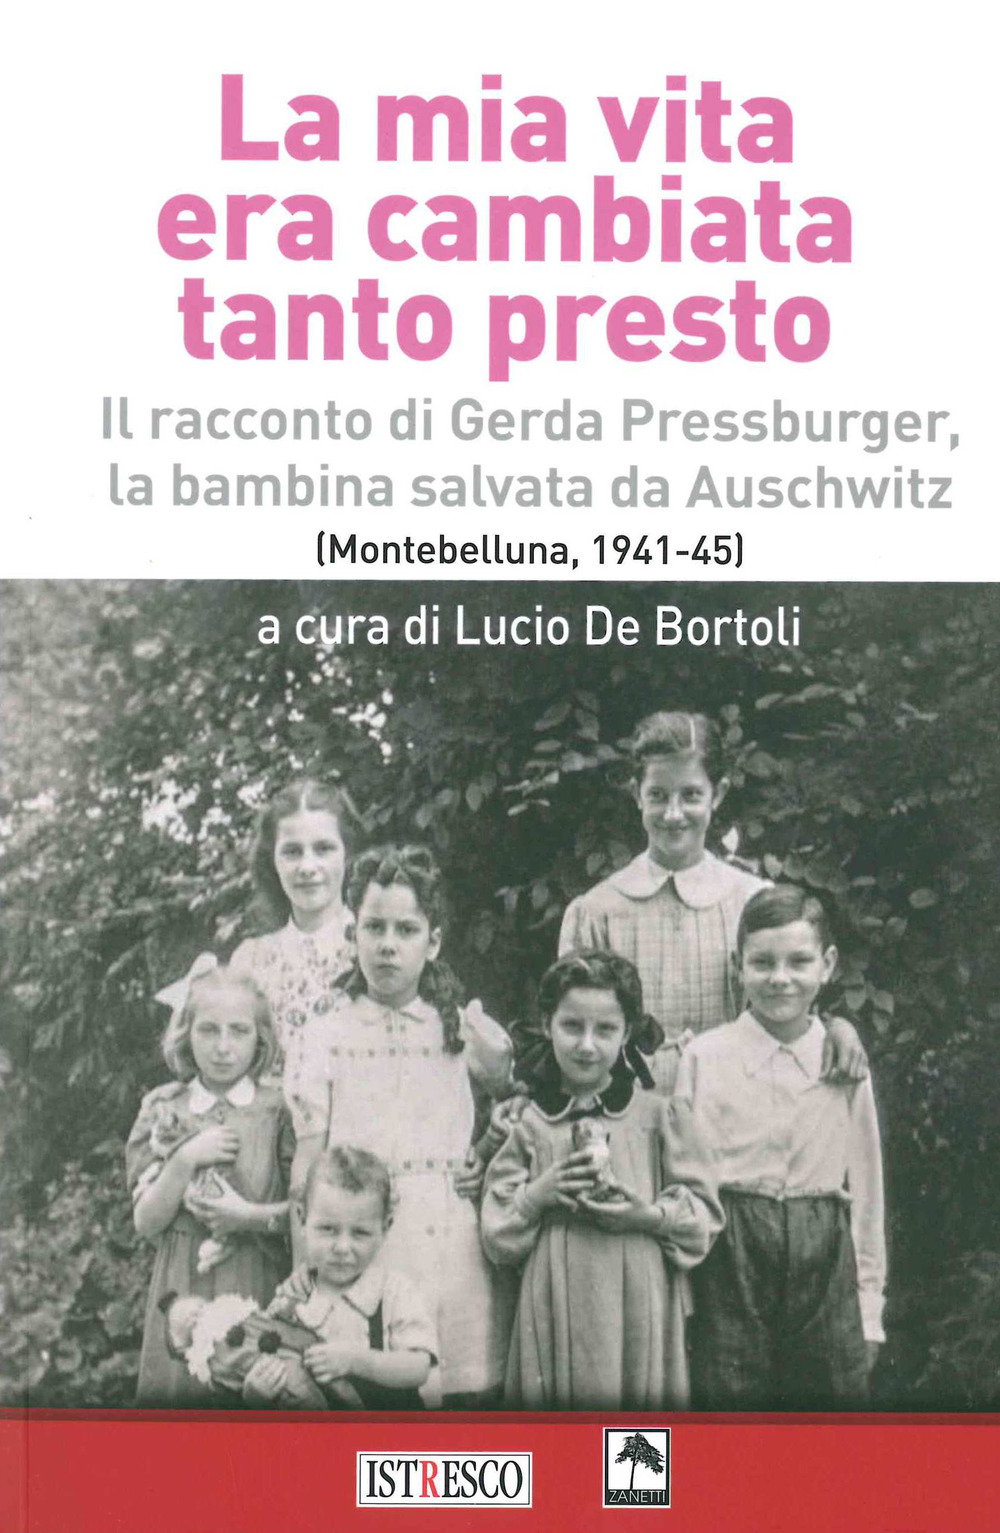 La mia vita era cambiata tanto presto. Il racconto di Gerda Pressburger, la bambina salvata da Auschwitz (Montebelluna, 1941-45)